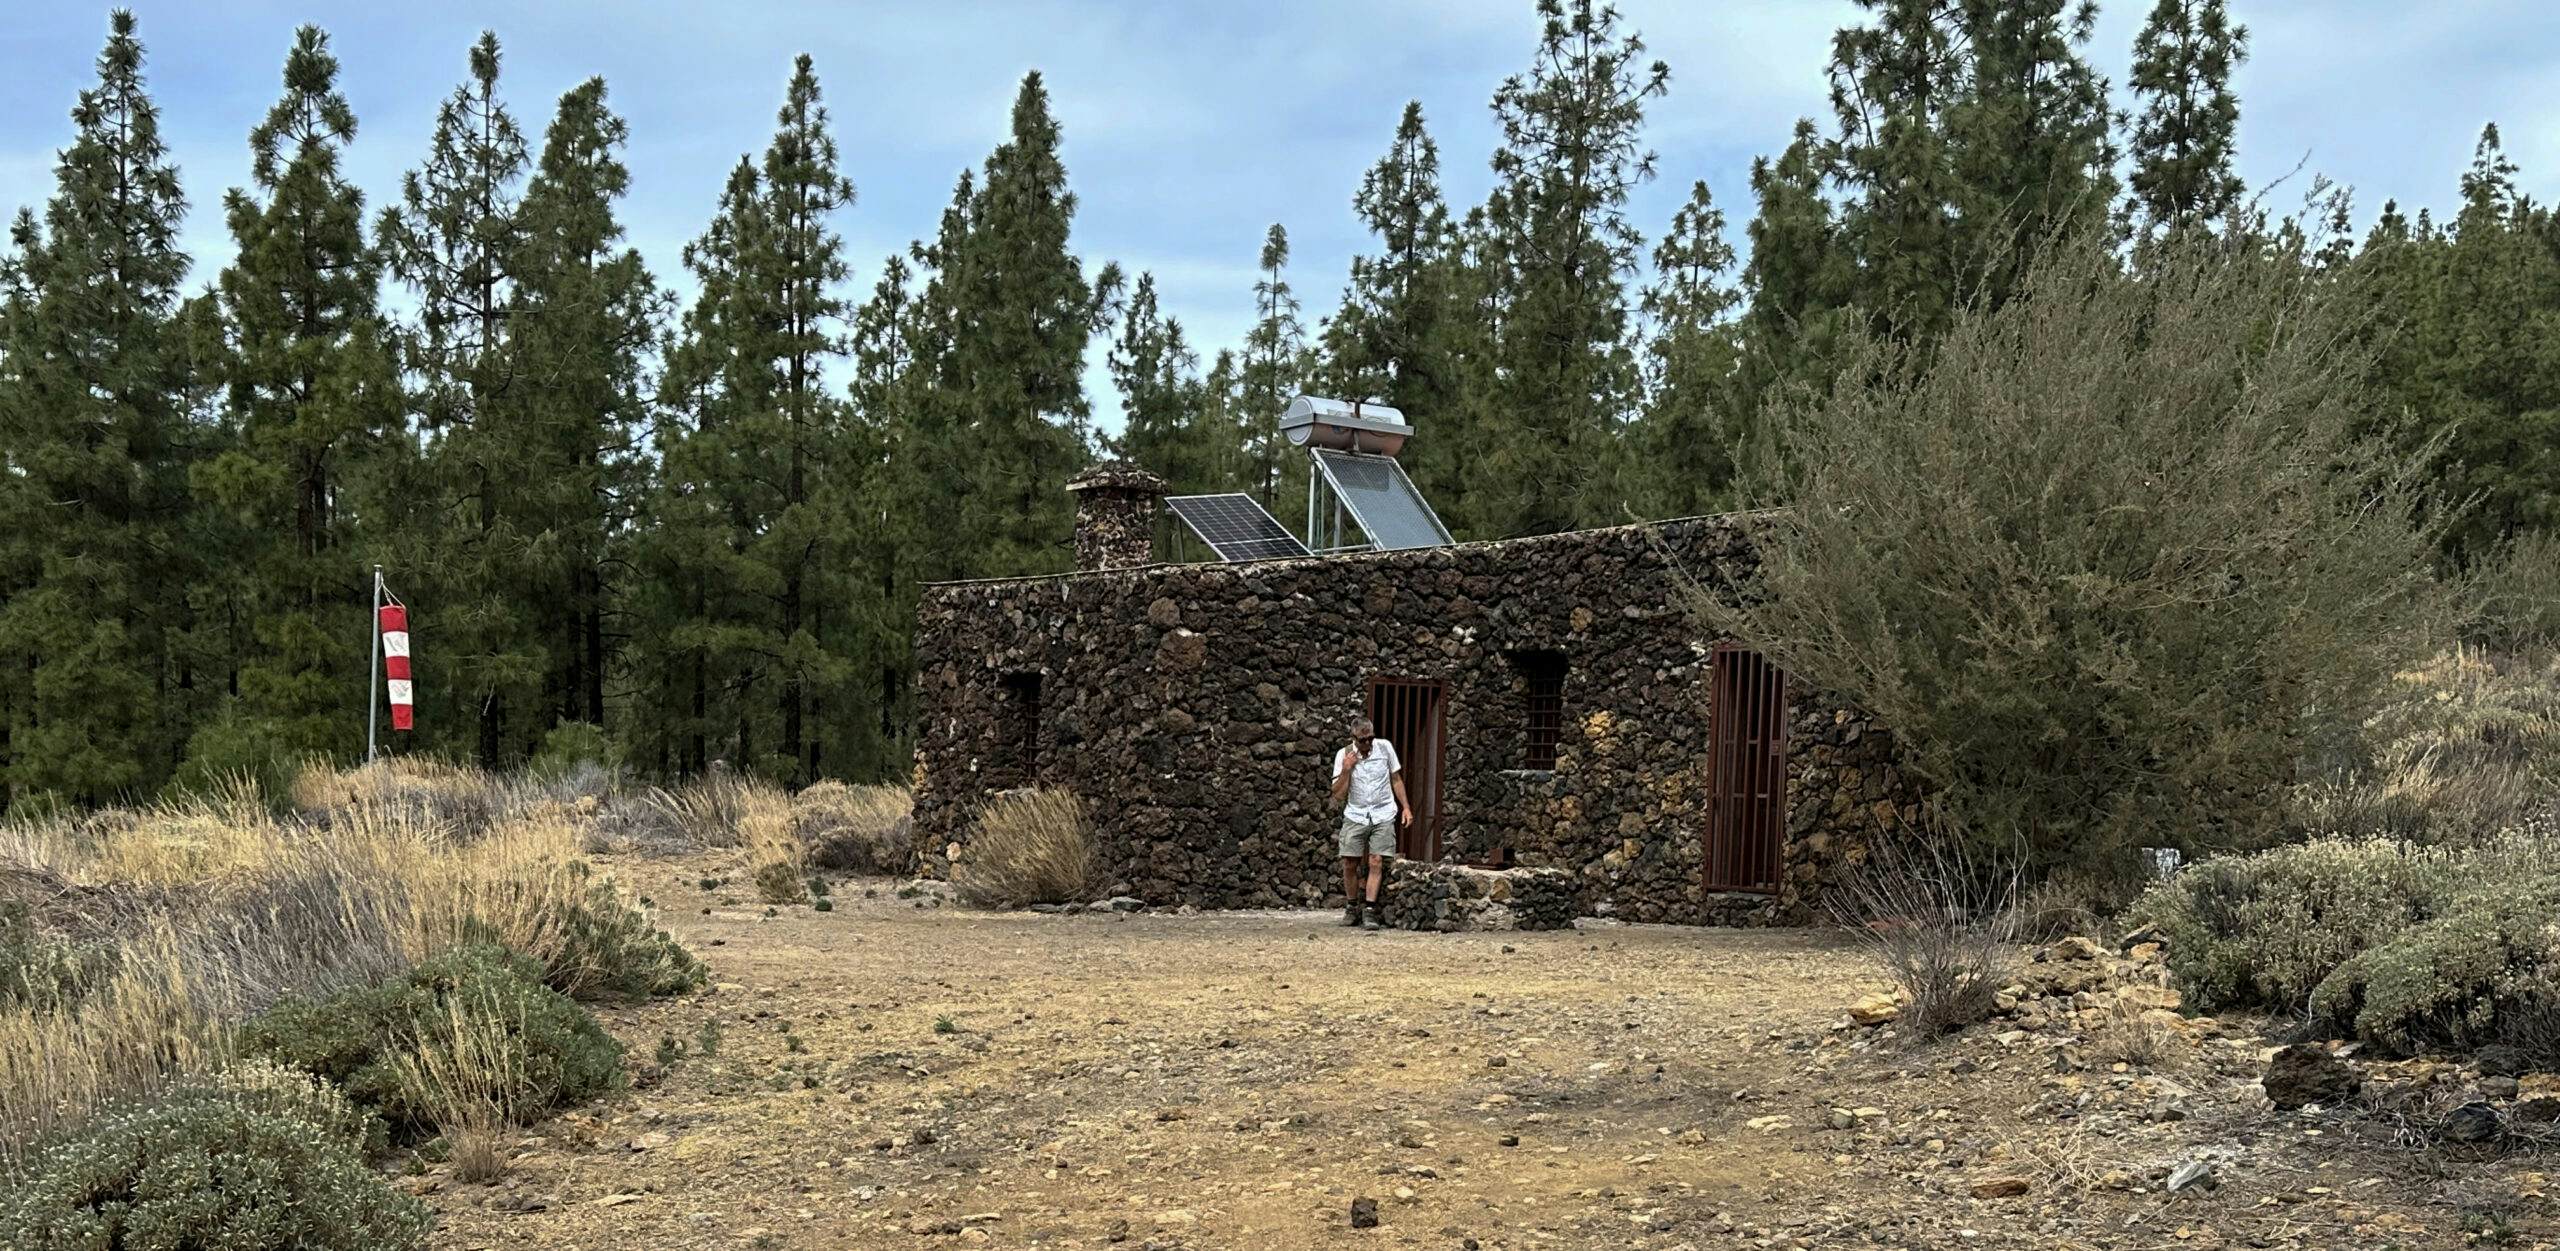 Hiker in front of the Refugio de Chasogo